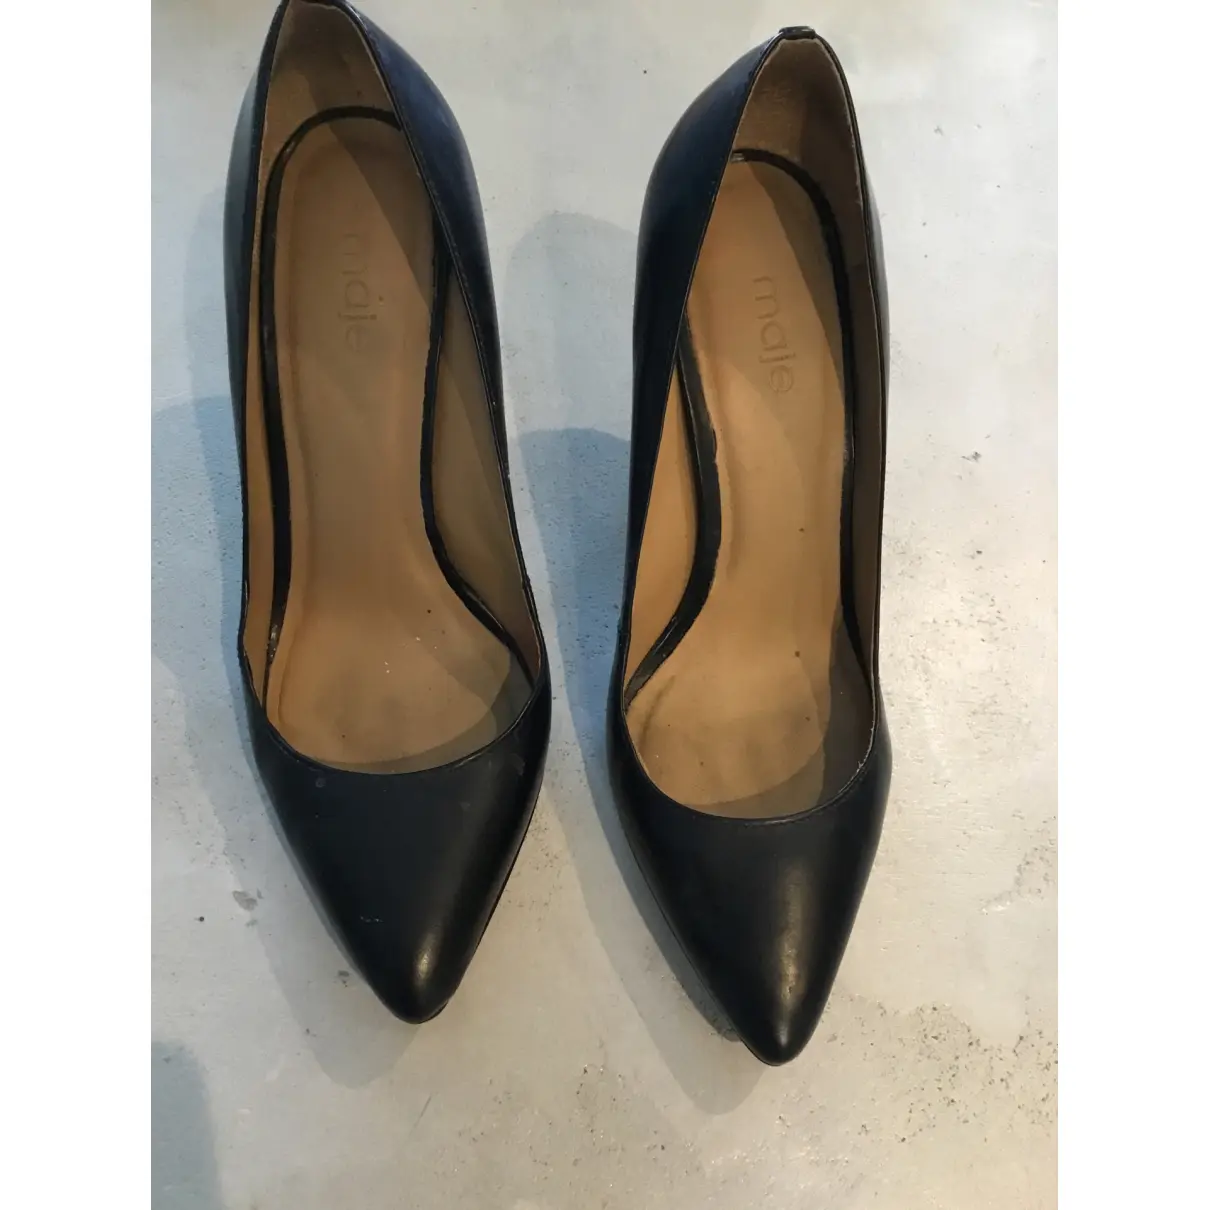 Buy Maje Spring Summer 2021 leather heels online